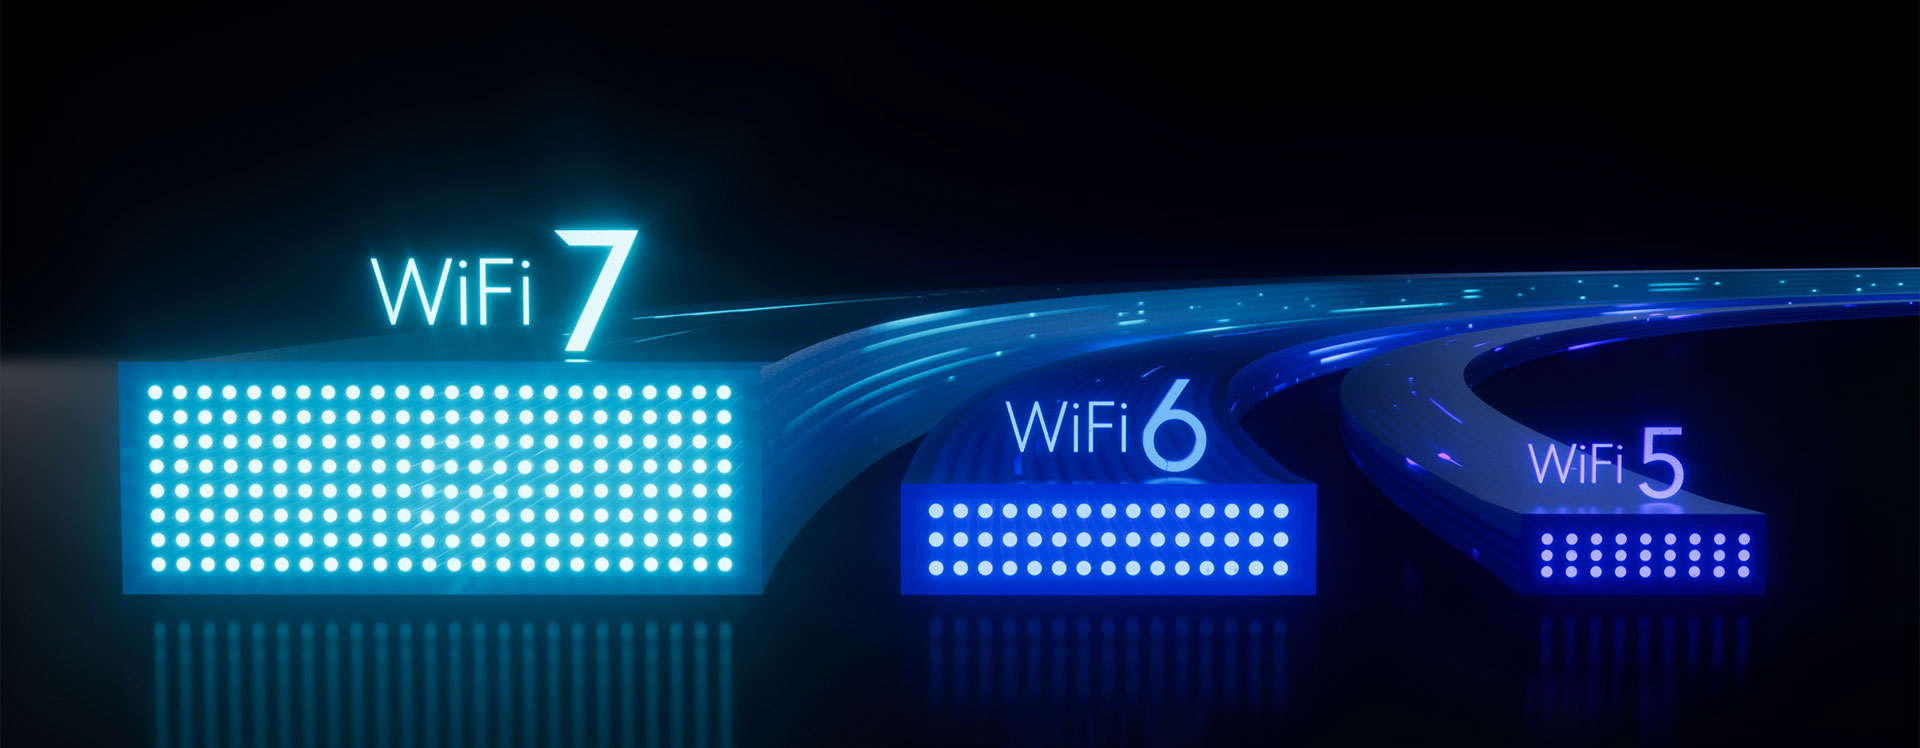 Опрос: почти половина организаций собирается перейти на WiFi 7 к концу следующего года